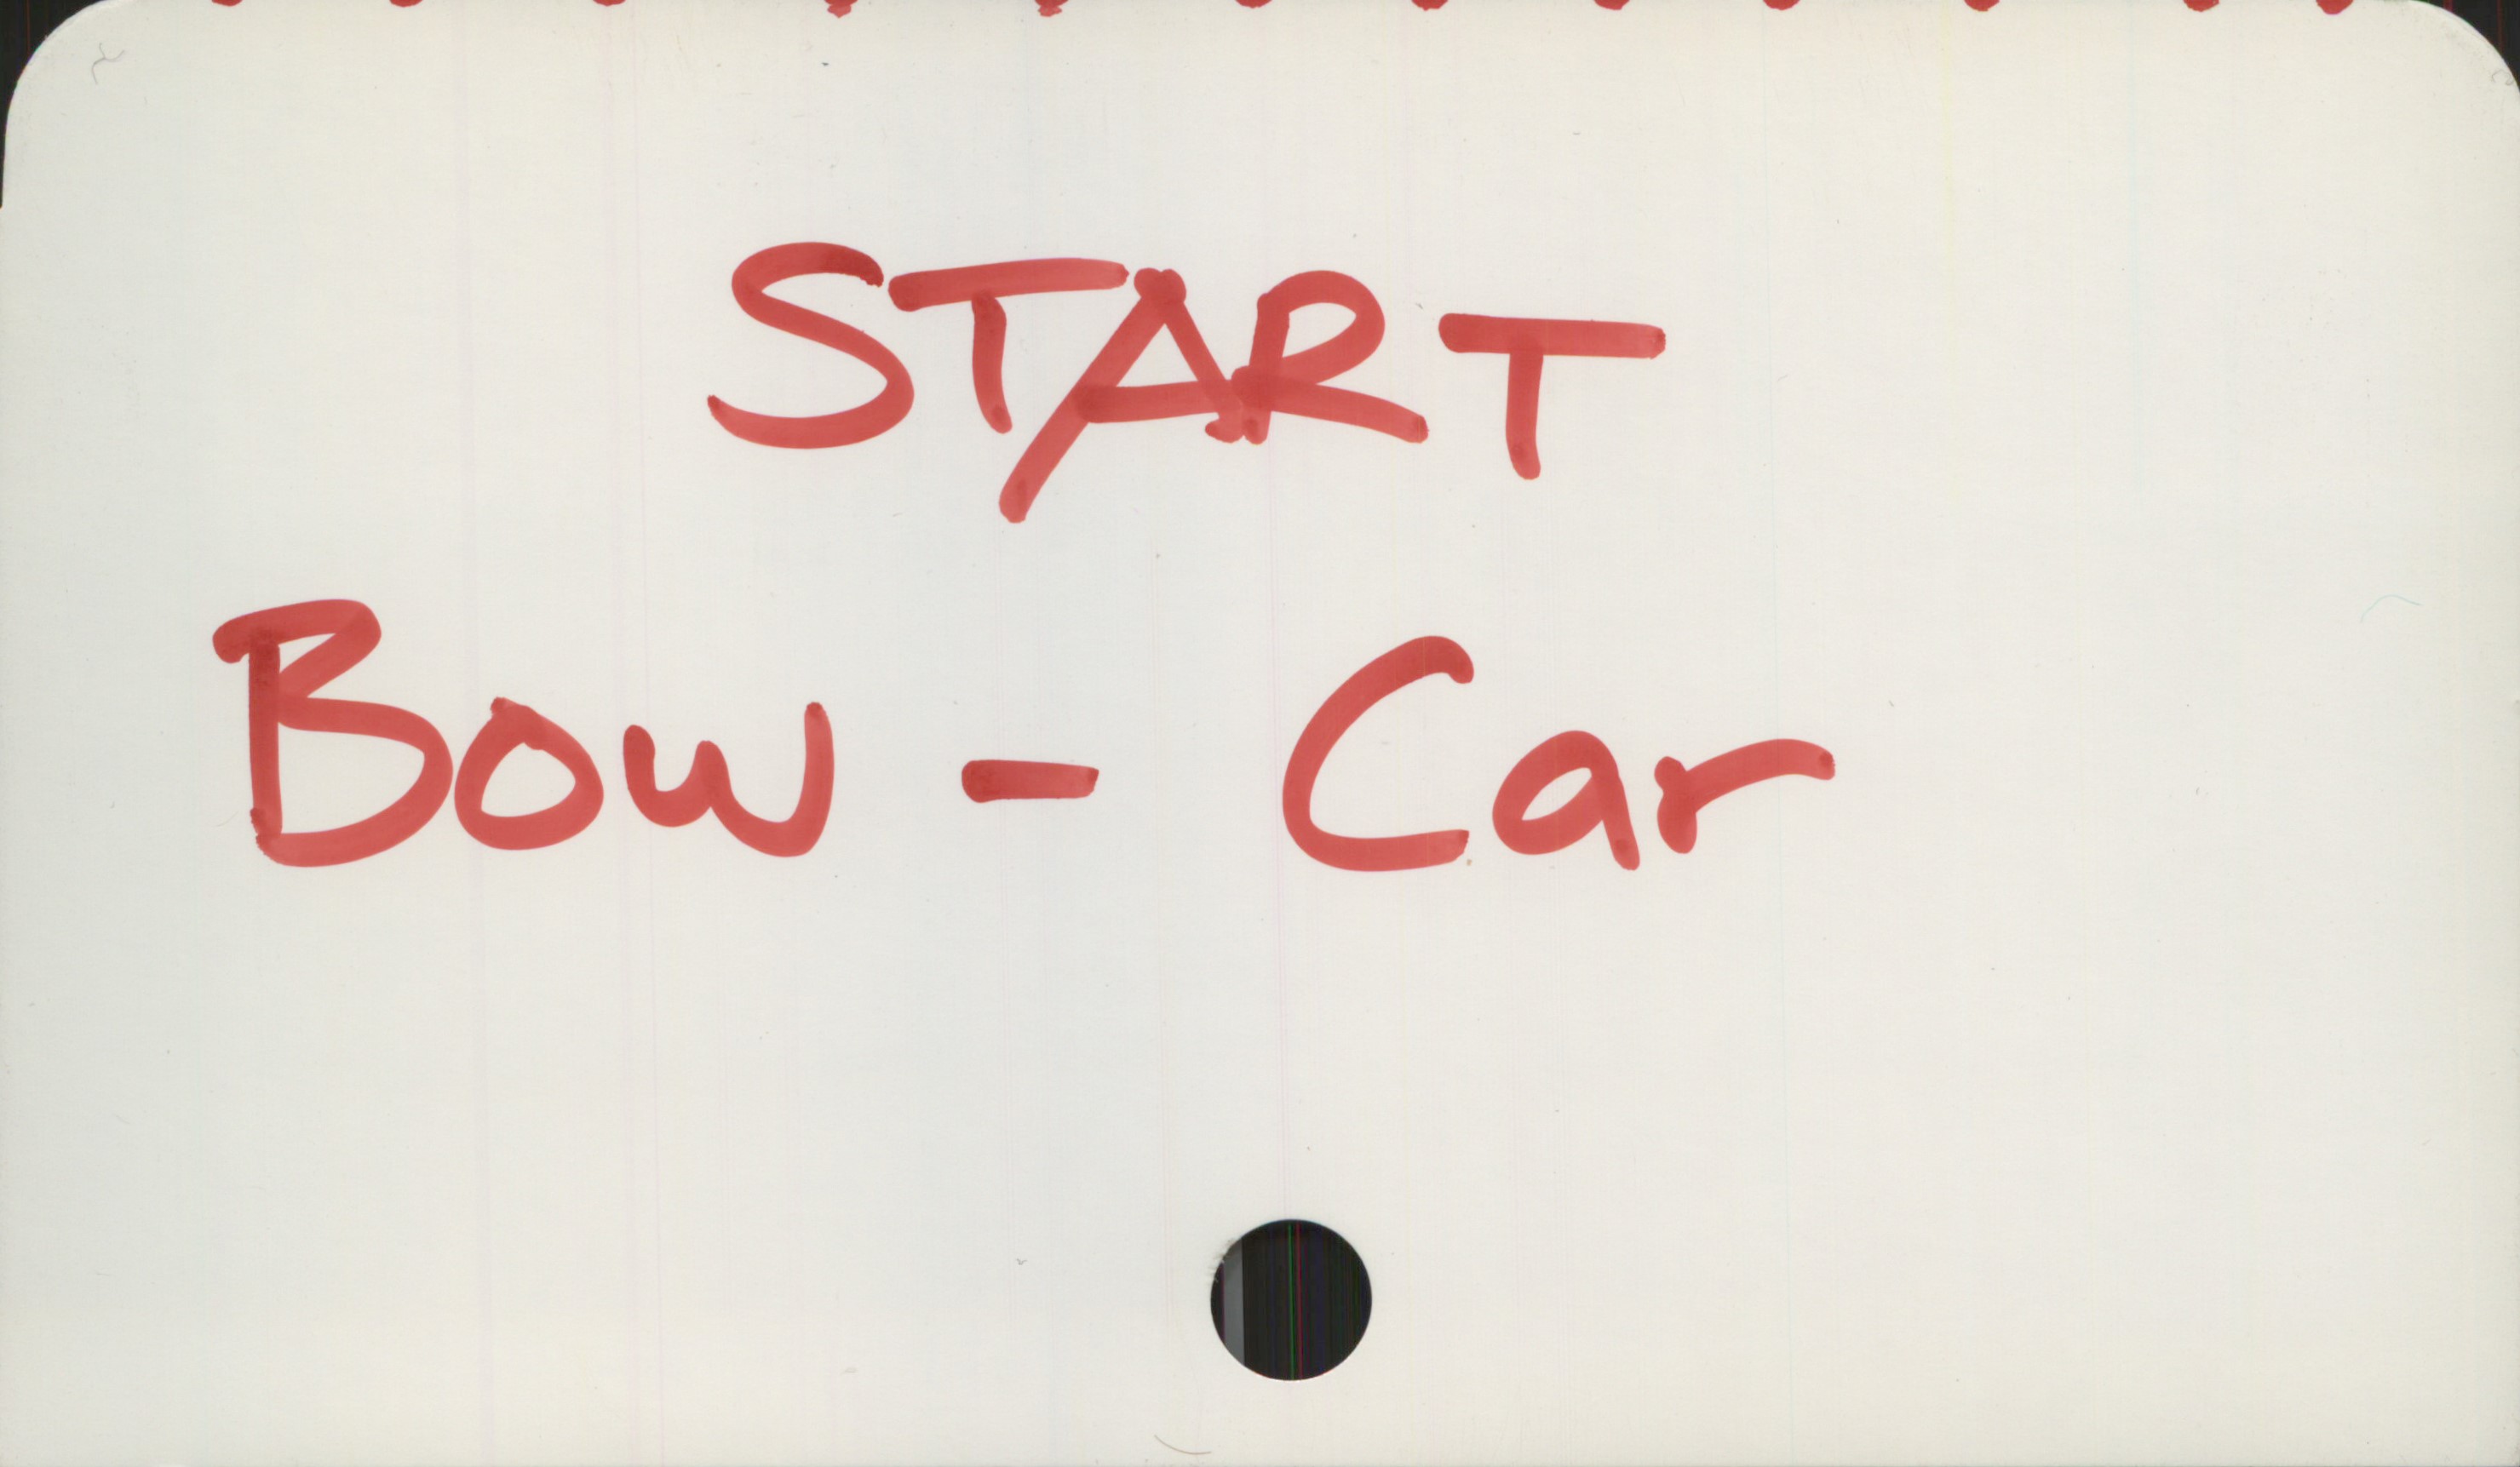  START
Eow-Car-
.

